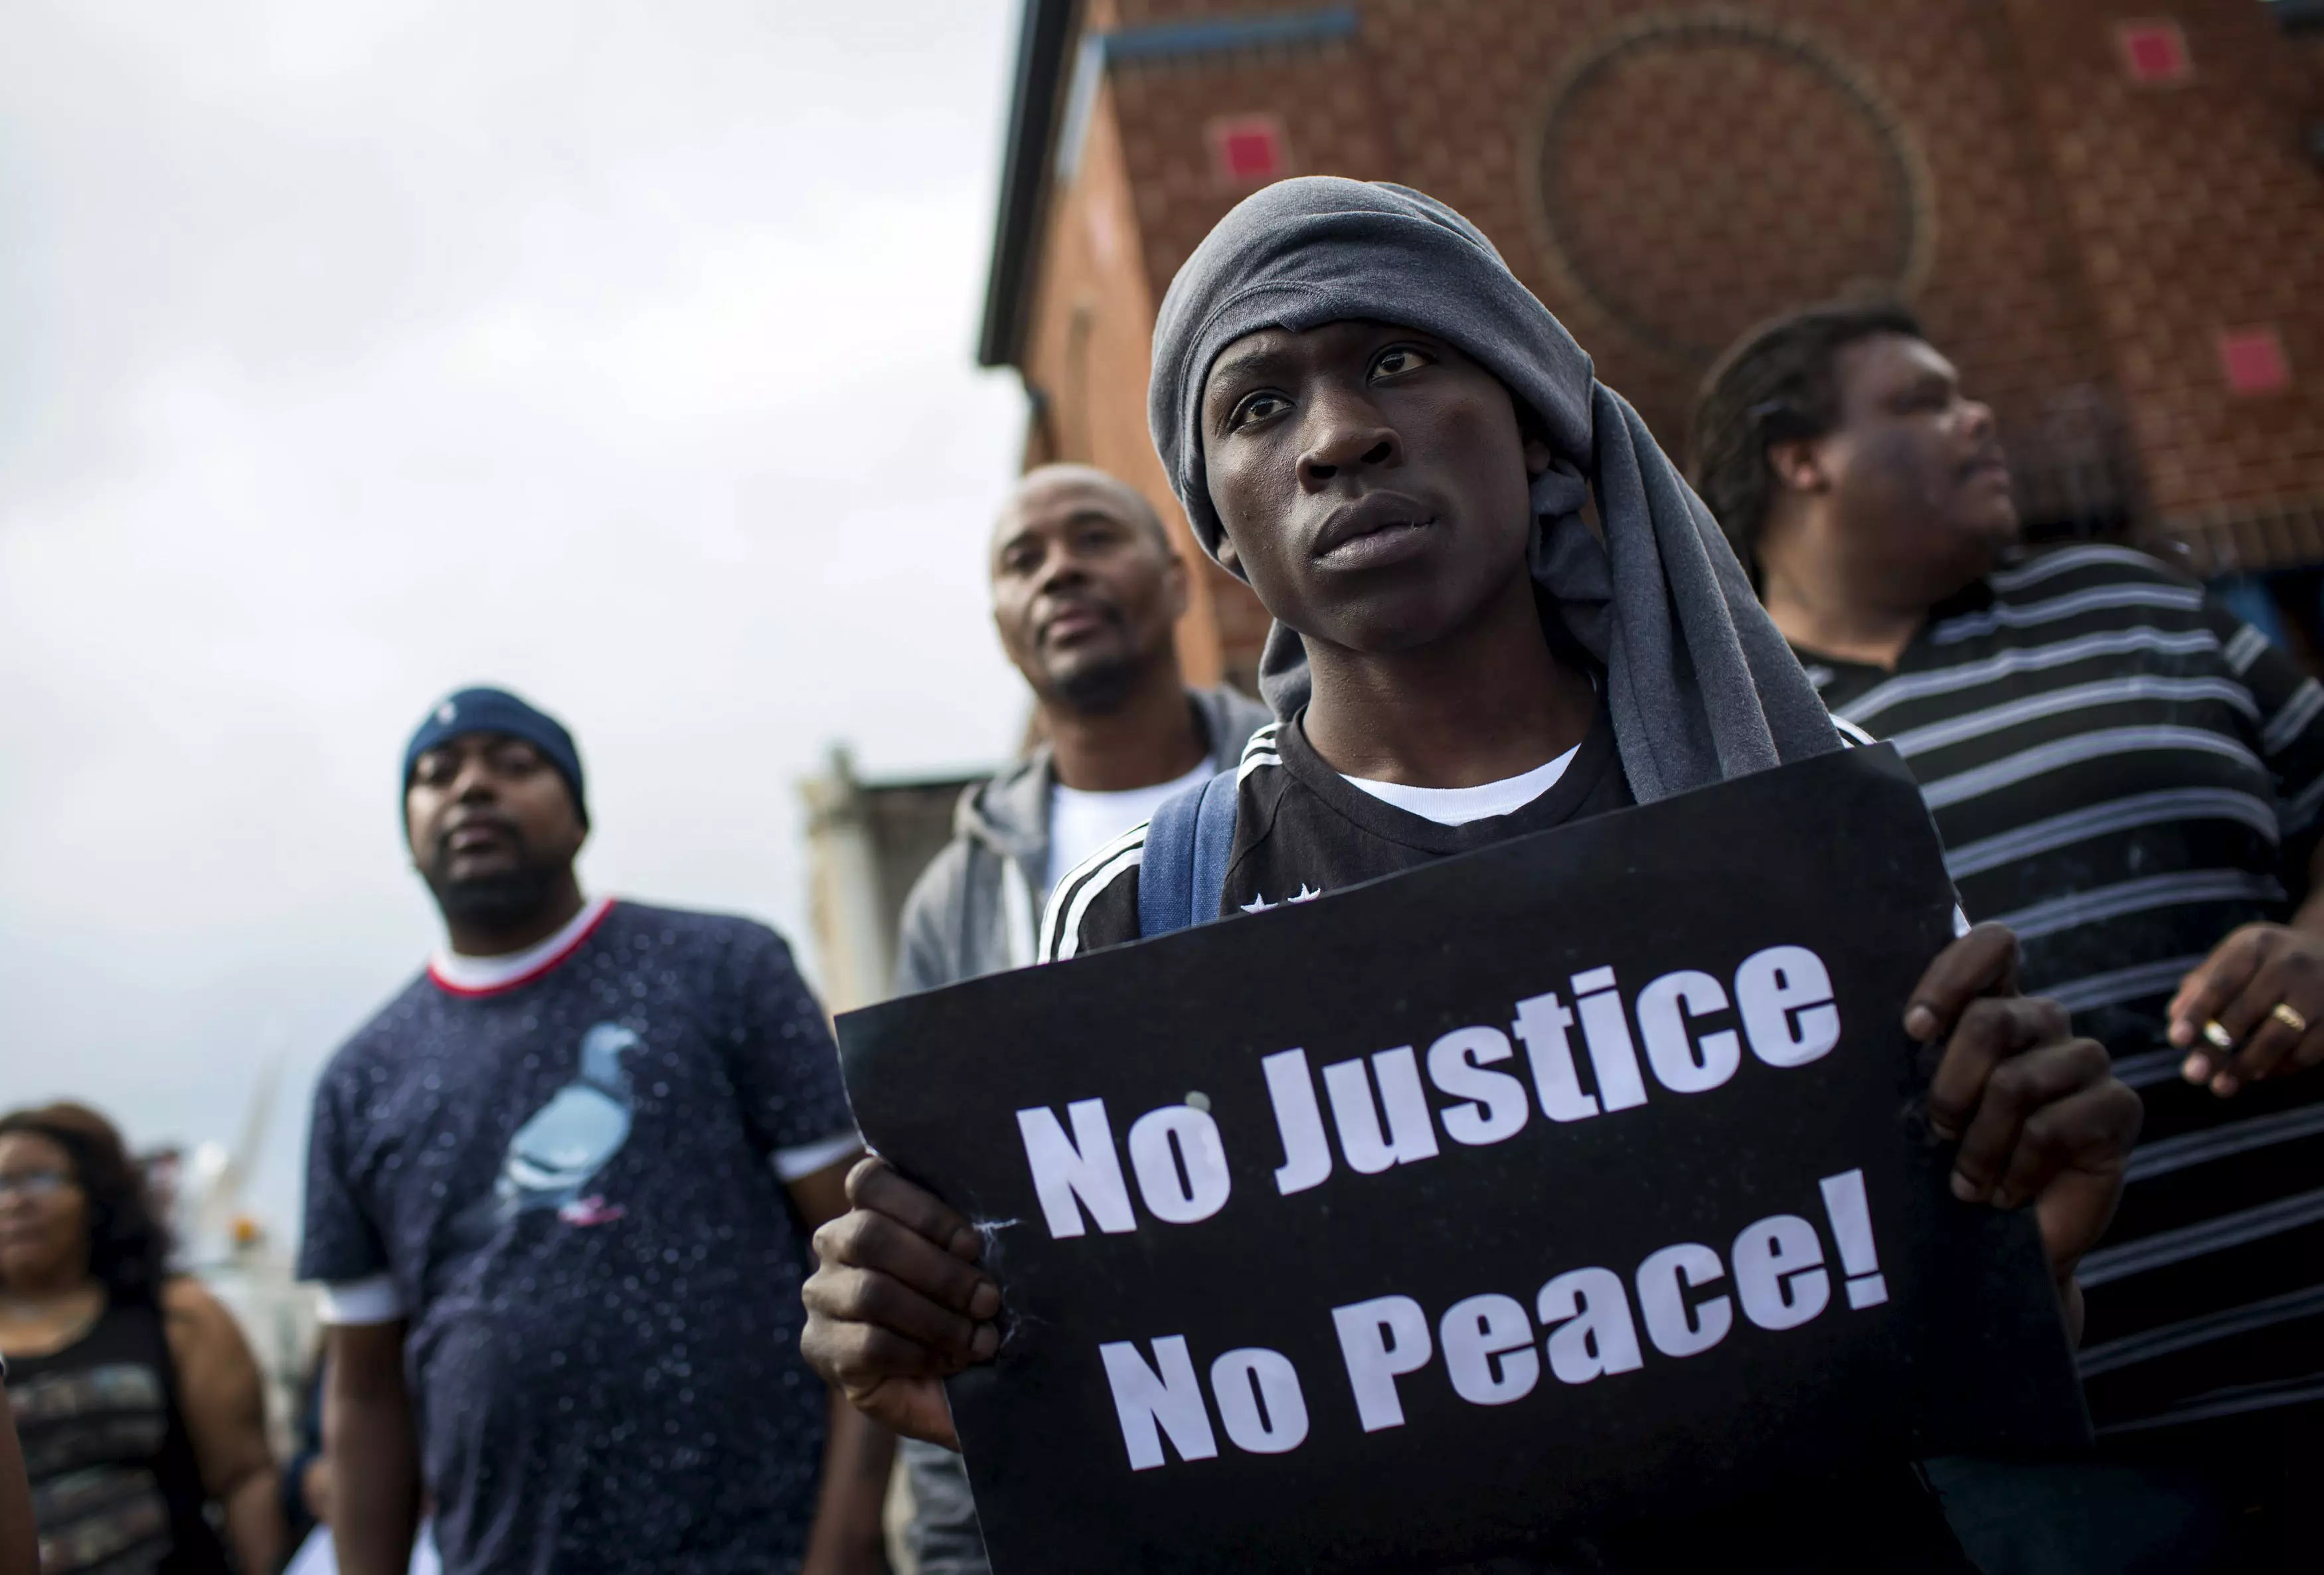 "אין צדק, אין שלום". מפגינים שחורים בבוליטמור